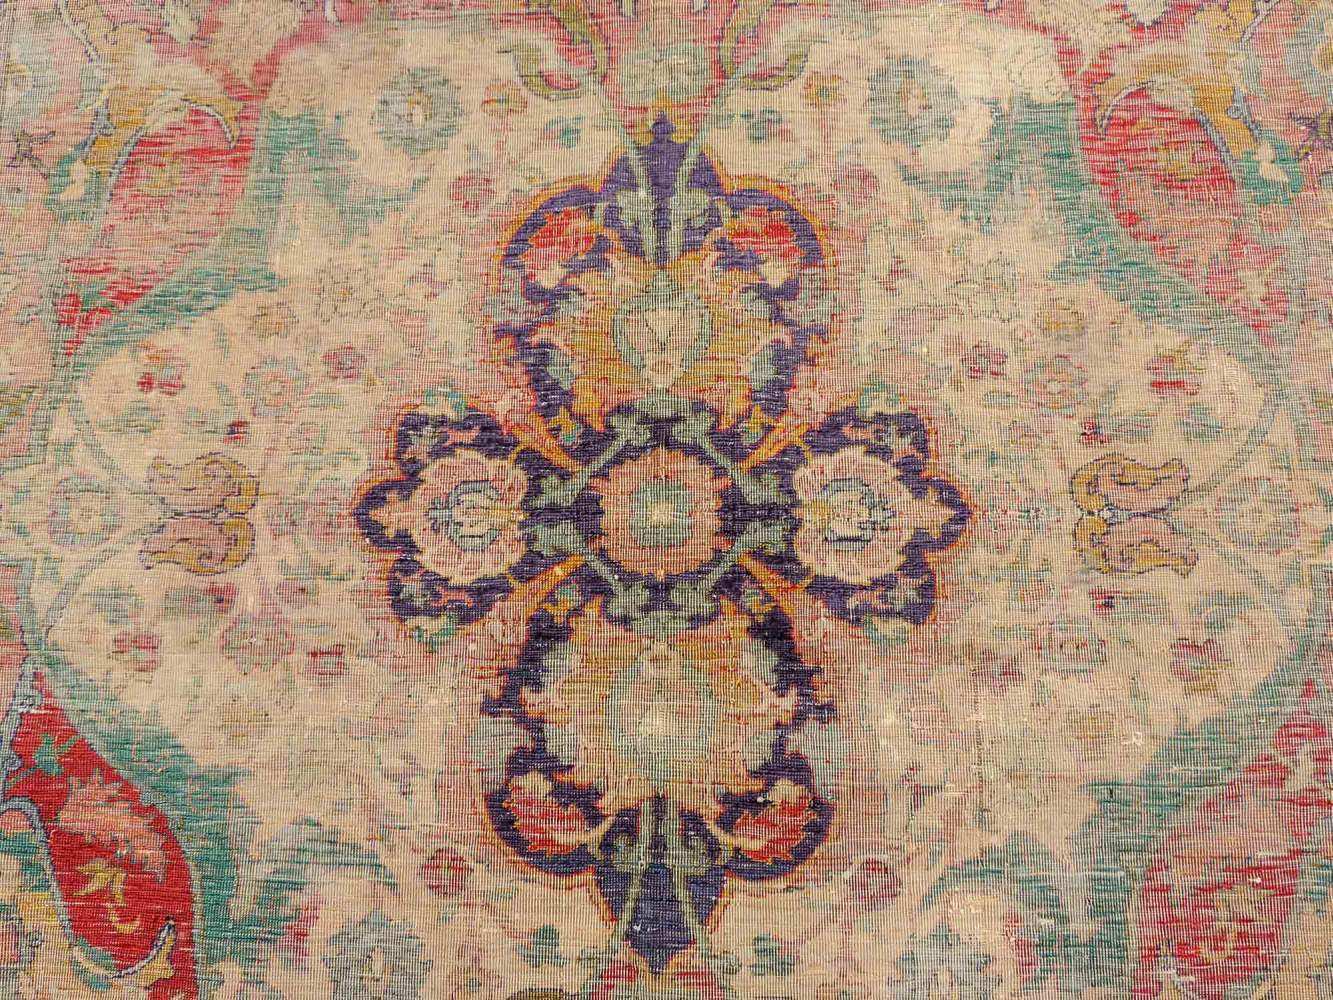 Safawiden Seidenteppich, Iran. Antik, 17. Jahrhundert. 162 cm x 116 cm. Handgeknüpft in Persien. - Image 3 of 6